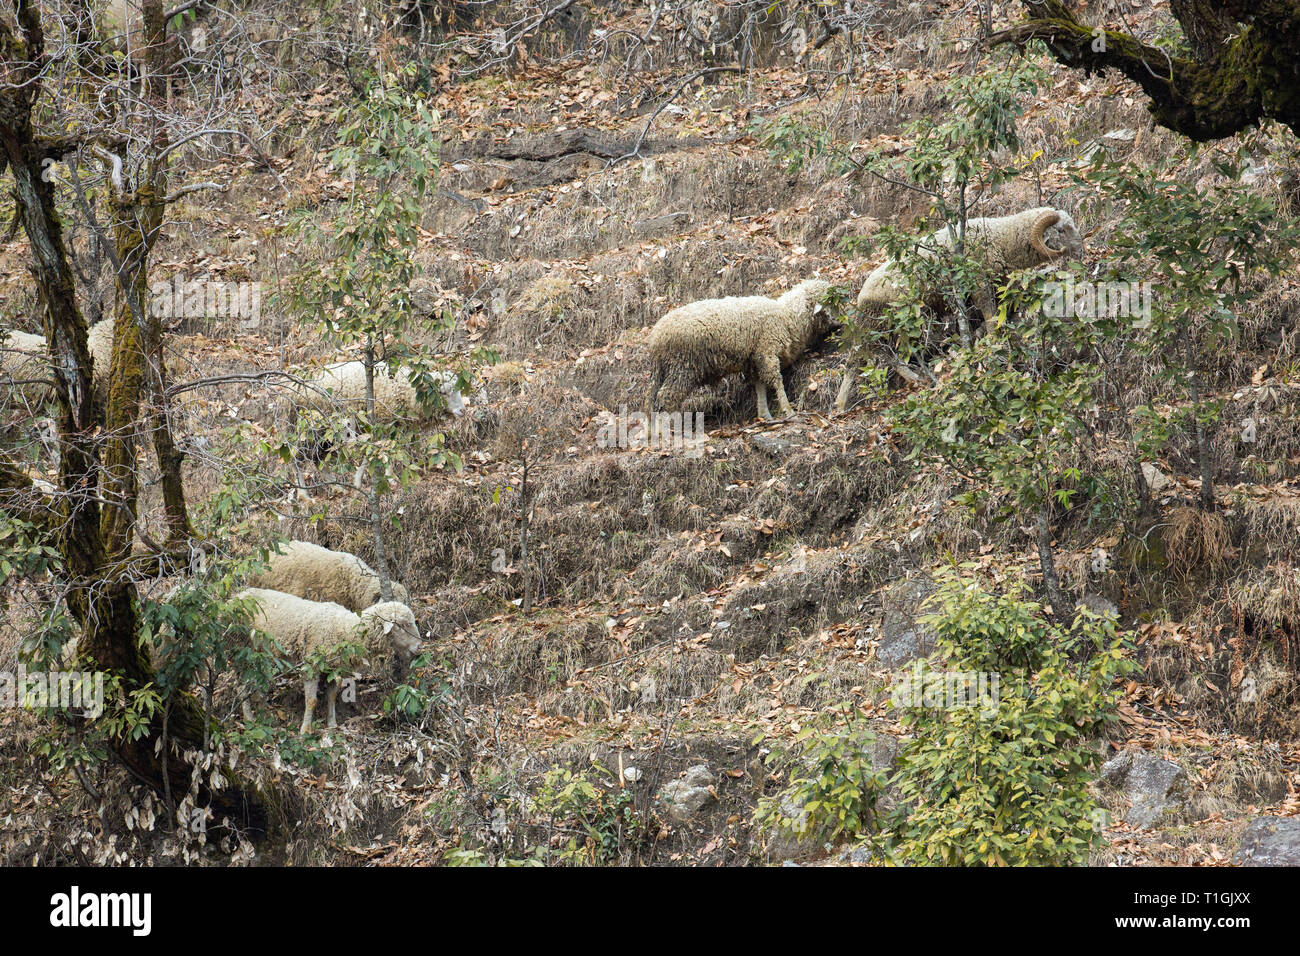 Hungrig inländischen Schafe (Ovis aries). Bitter Winter Wetter, Januar, Februar, zwingt die Tiere auf einer knappen, mageren, grüne Vegetation, die noch Futter. Ausläufer des Himalaya, Indien. ​ Stockfoto